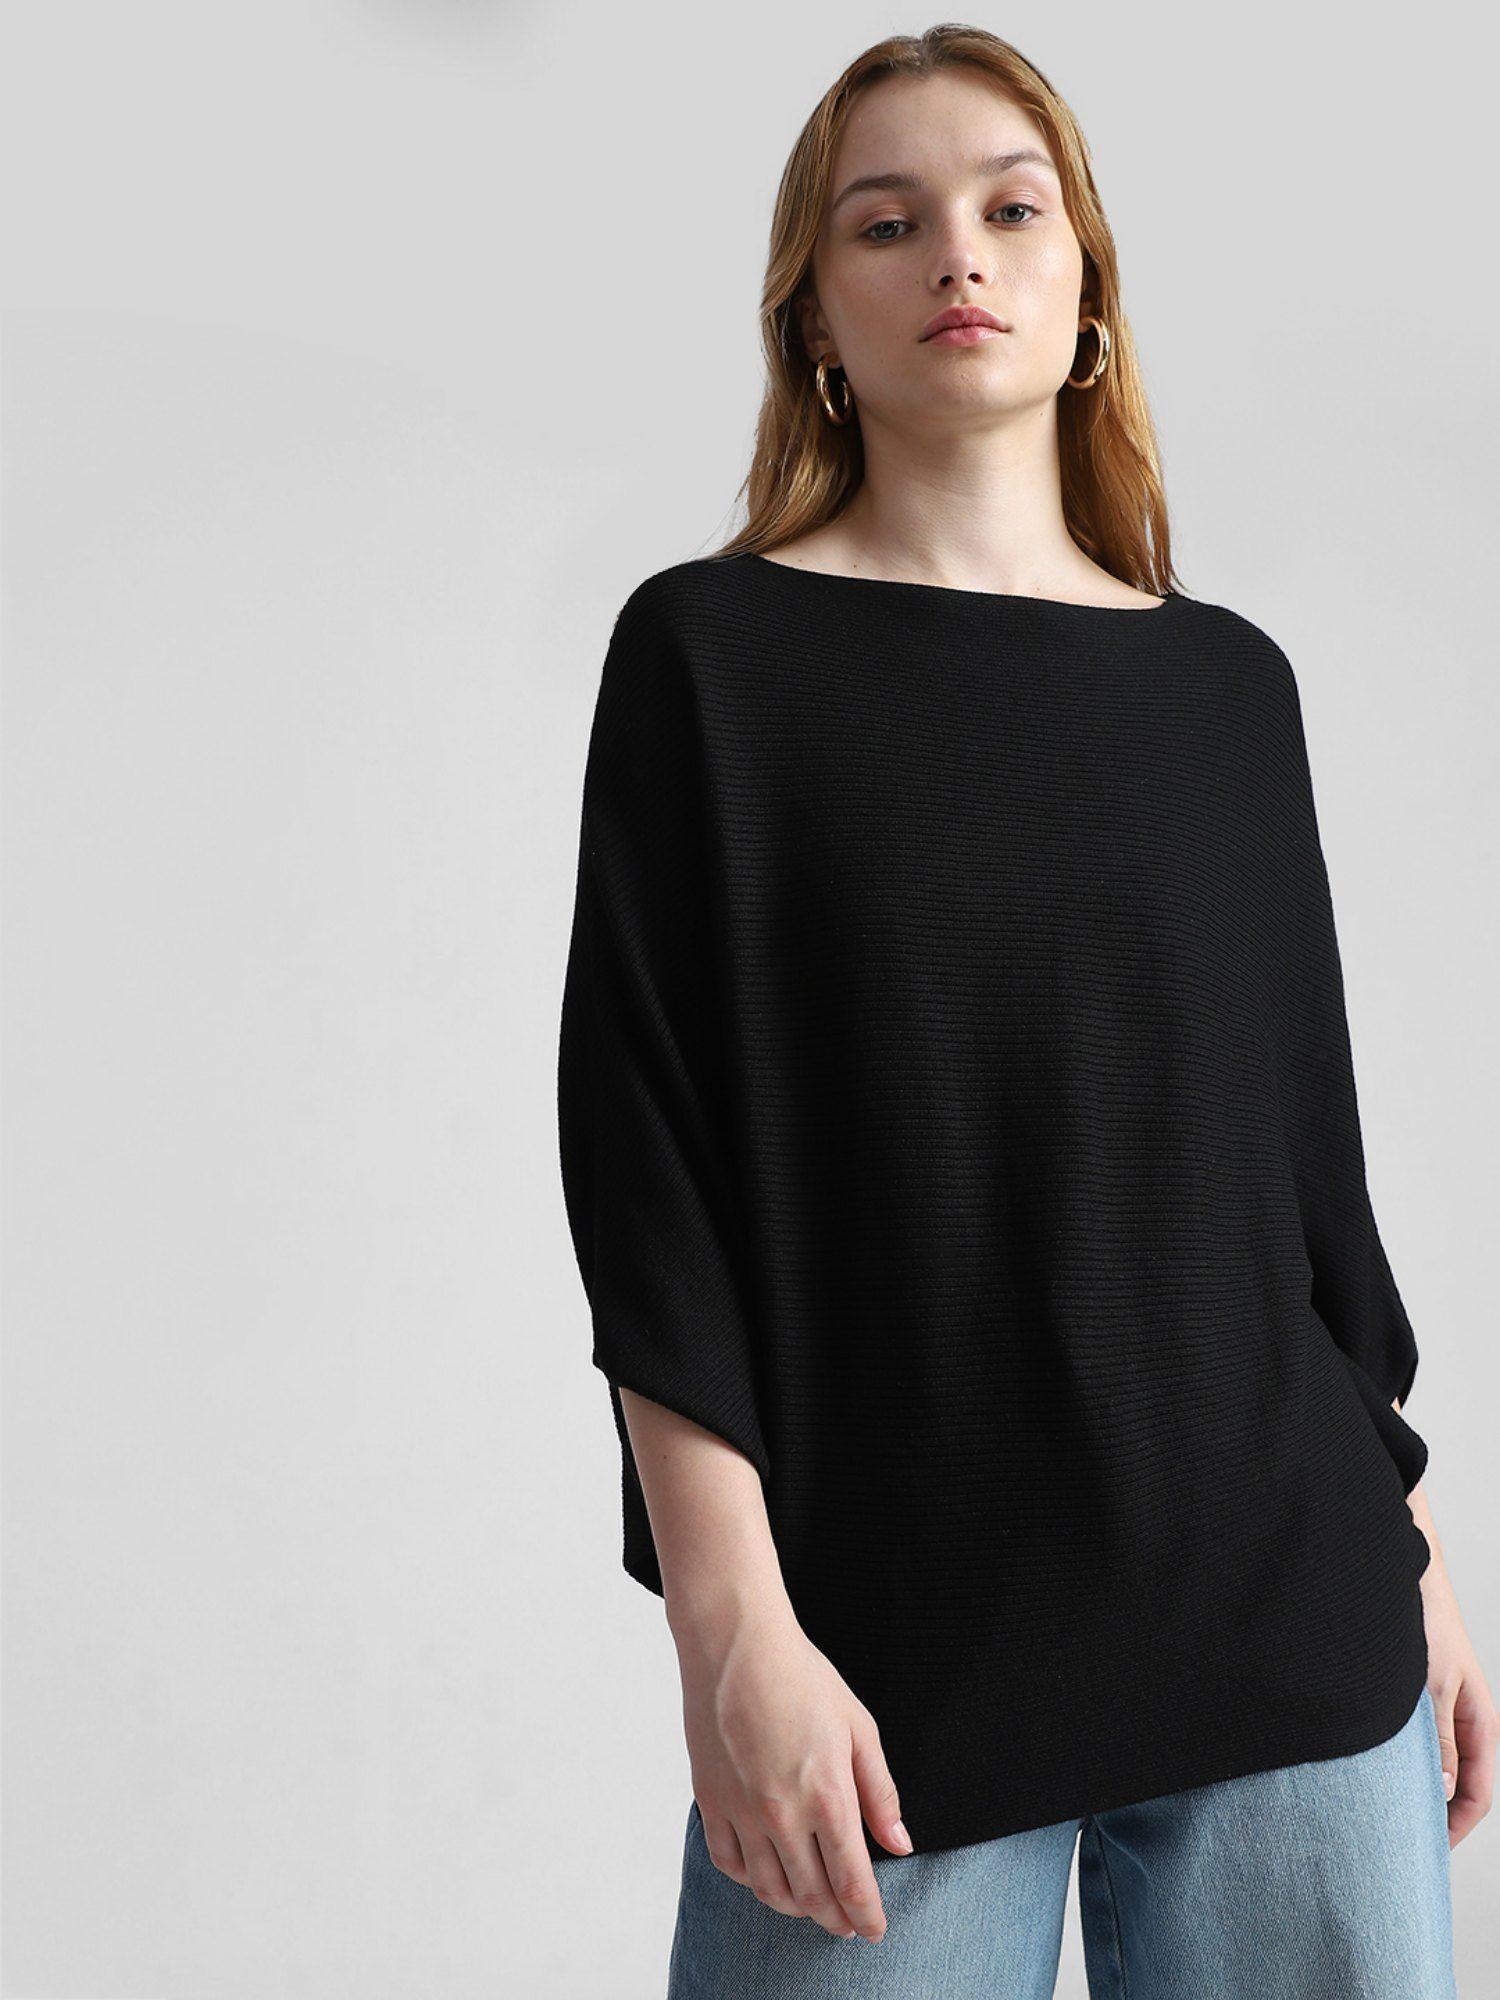 women solid black sweater